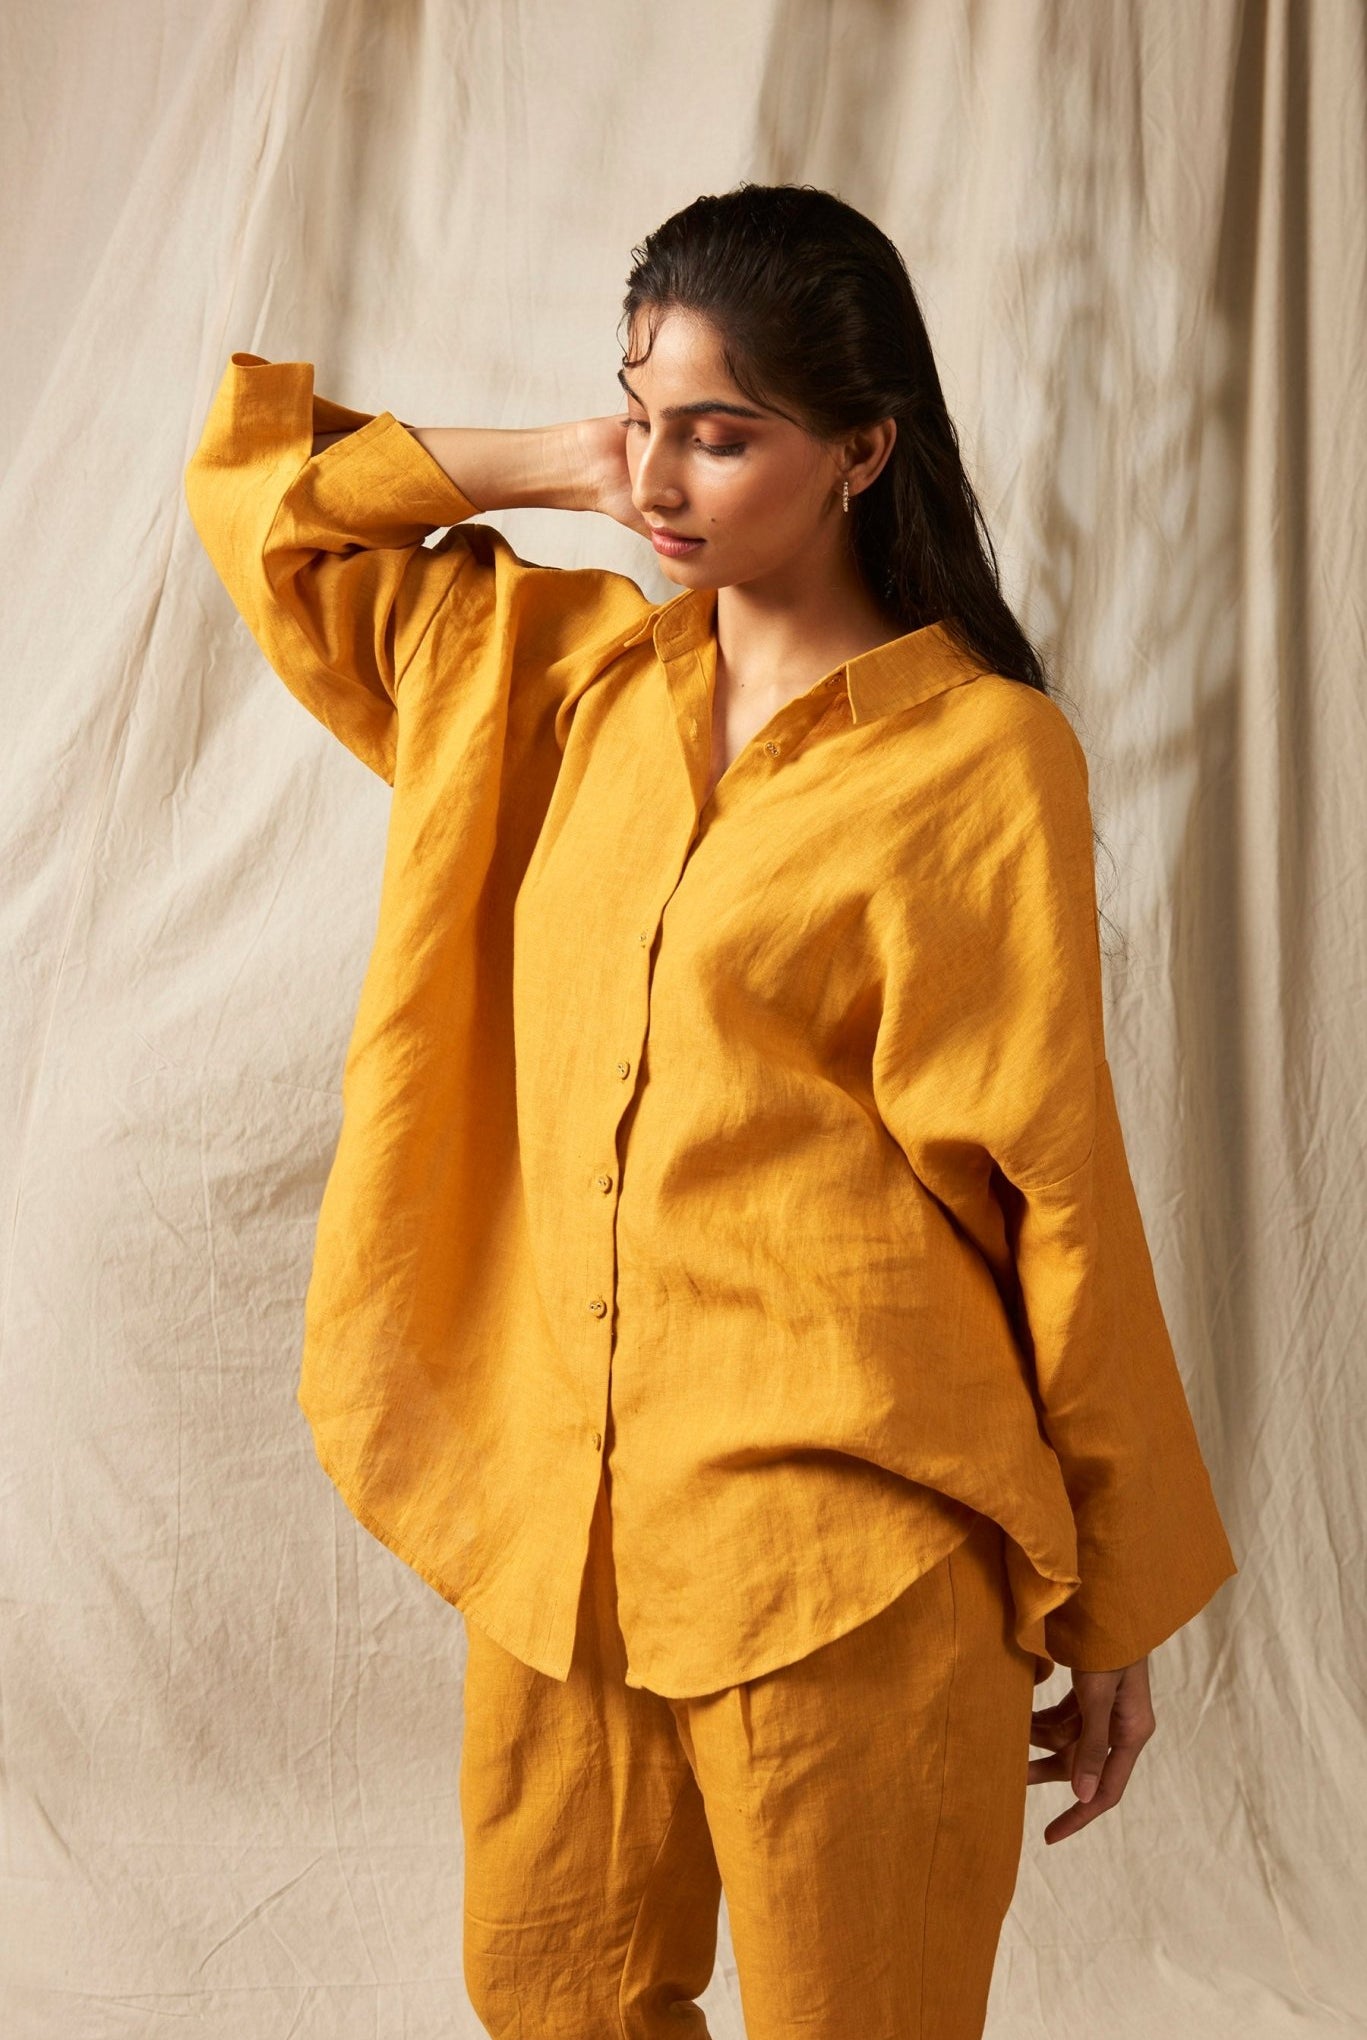 Jaisalmer Linen Oversized Flared Shirt Set - CiceroniCo-ord SetSaphed